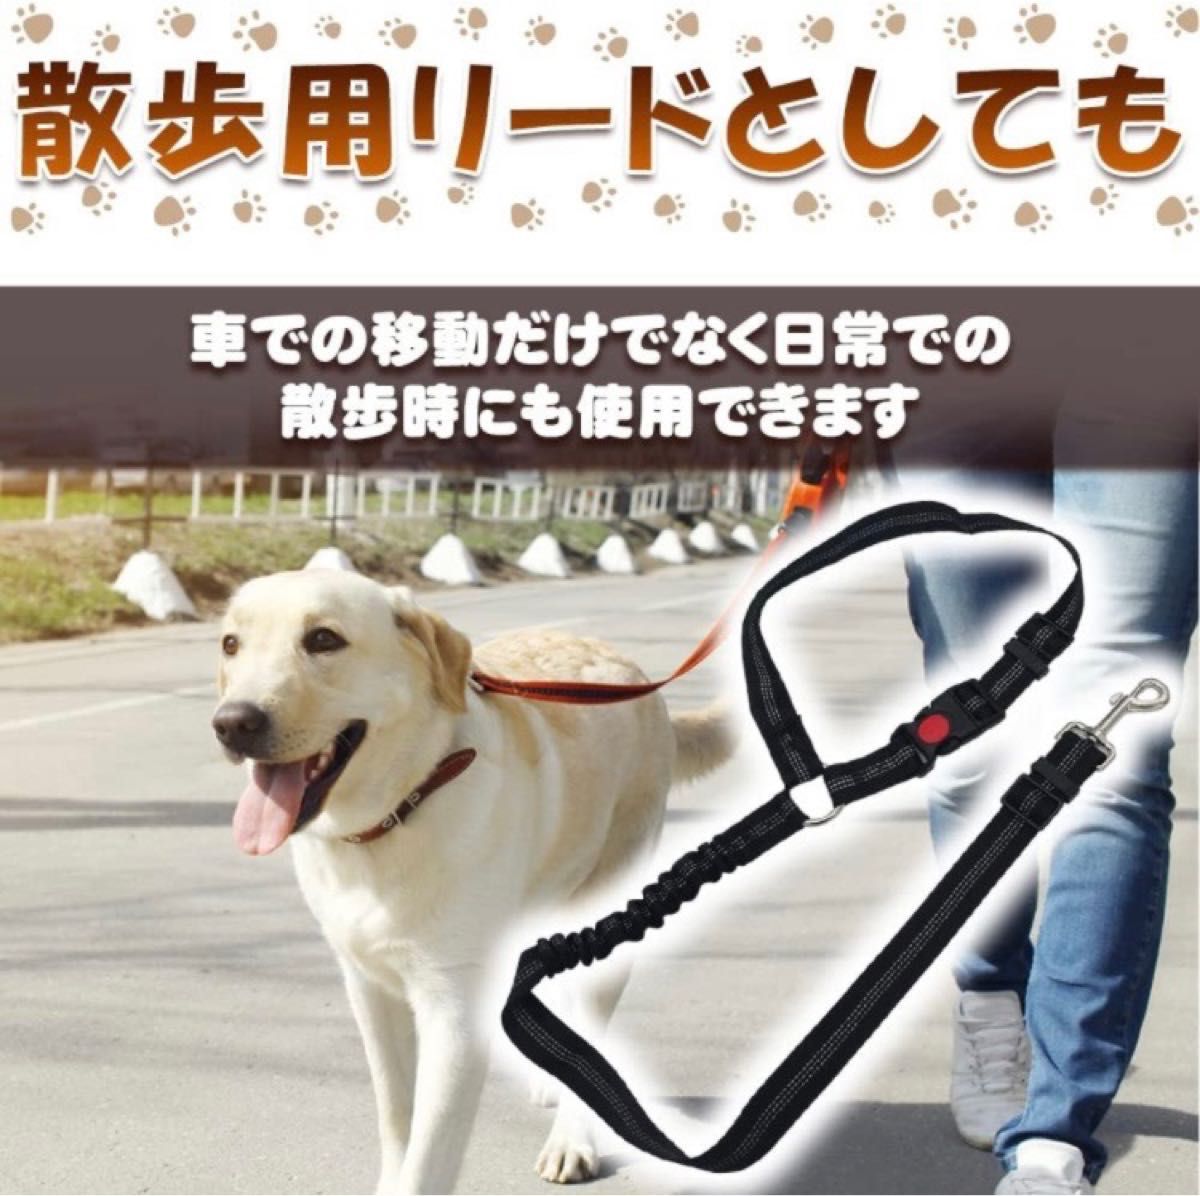 ドライブリード 犬猫兼用 ロック機能付き 飛び出し防止 伸縮ベルト 長さ調整可能 お散歩リード 2WAY仕様 (ブラック) 犬用